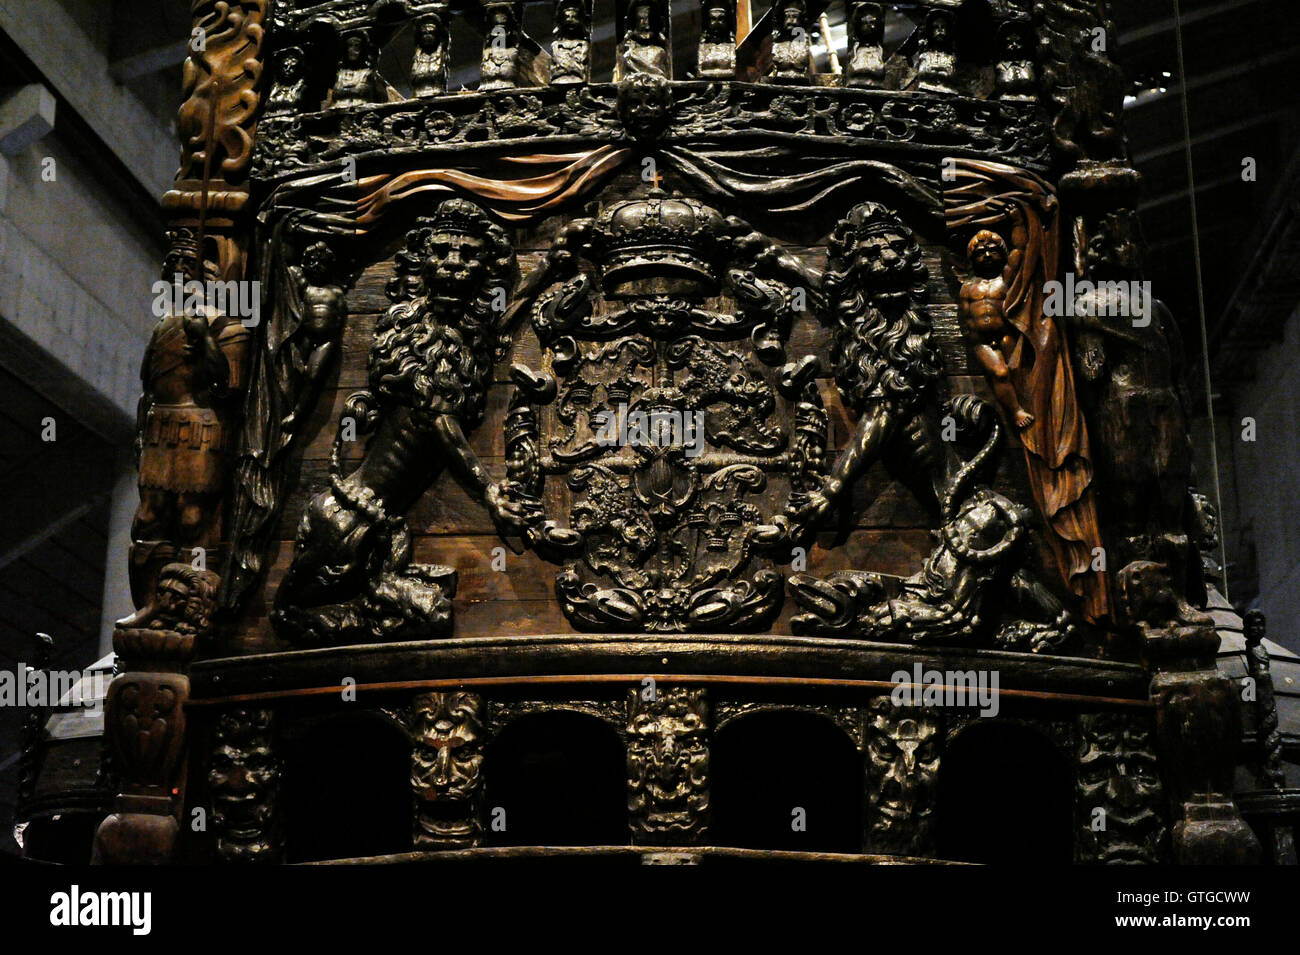 Warship Vasa. Construit 1626-1628. Détail de l'arrière. Les Lions tenant le blason de la Suède. Musée Vasa. Stockholm. La Suède. Banque D'Images